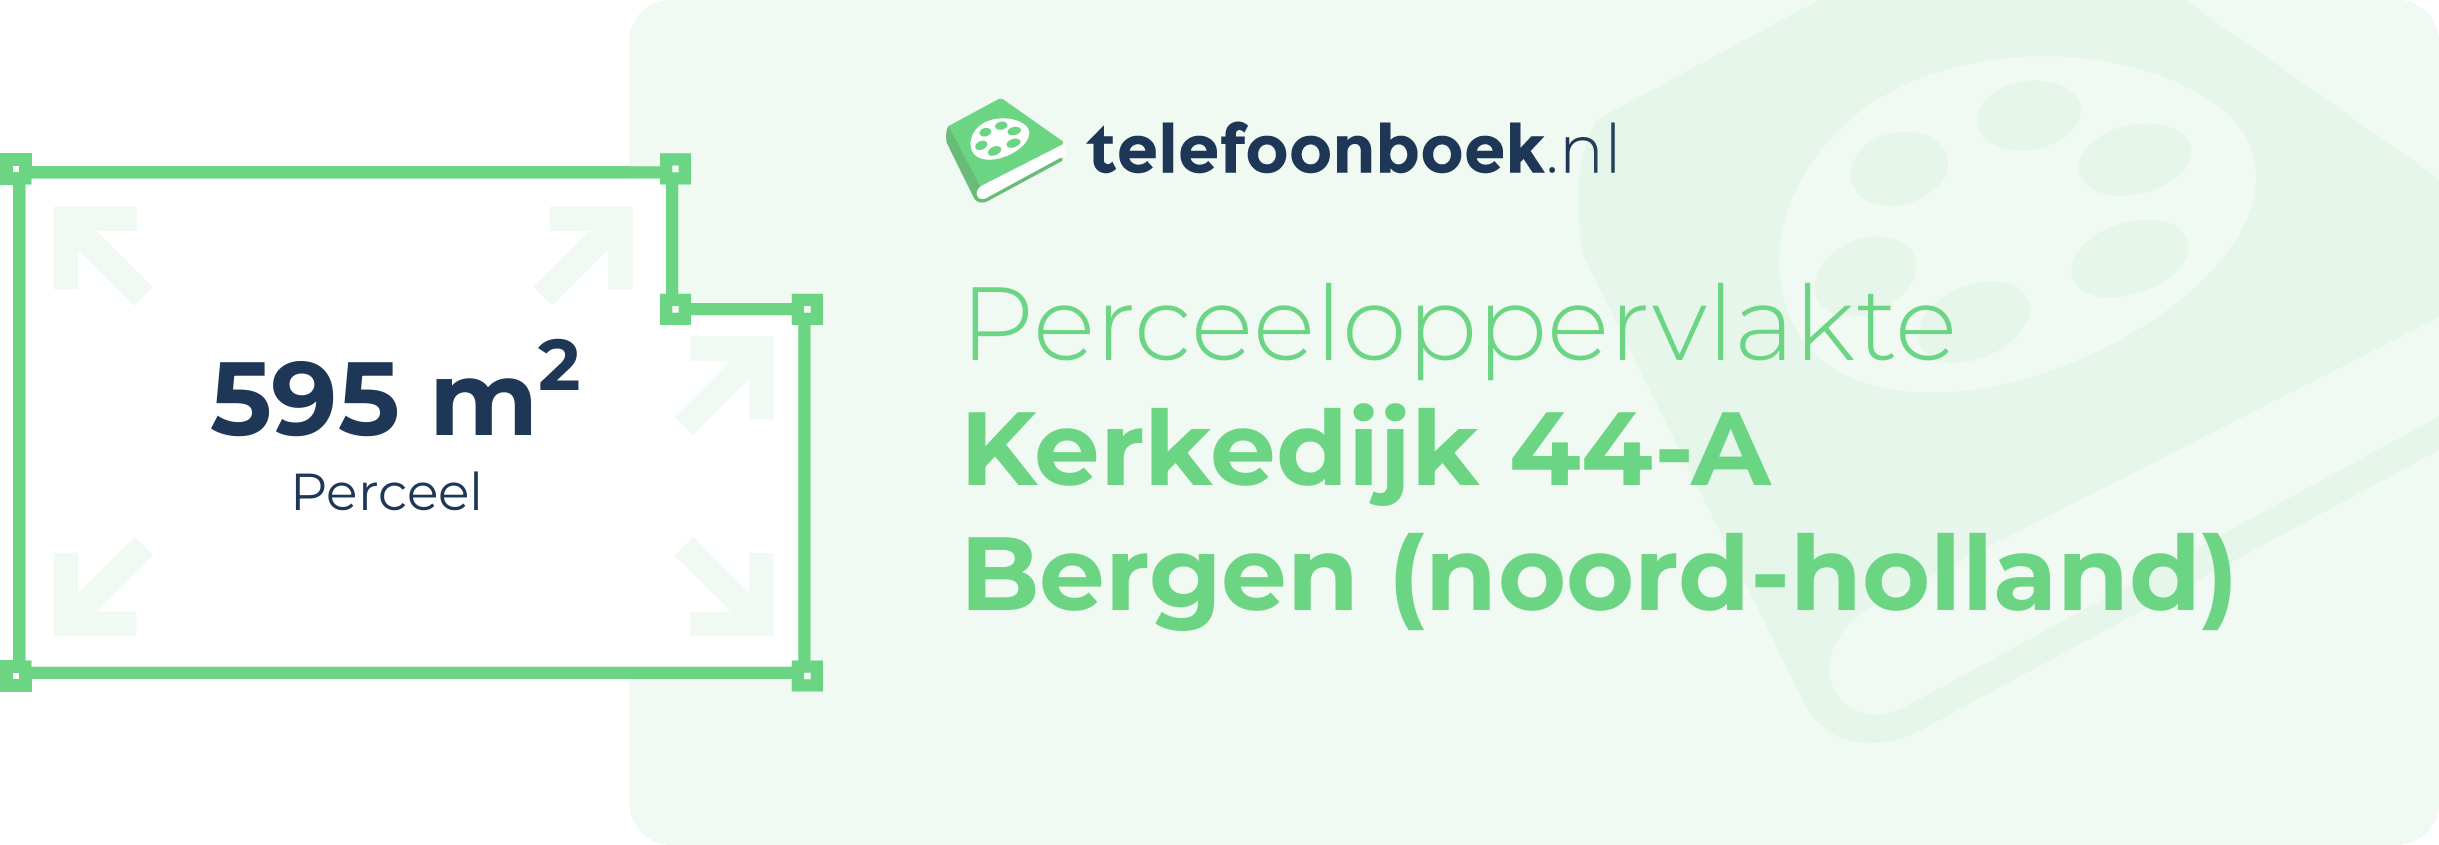 Perceeloppervlakte Kerkedijk 44-A Bergen (Noord-Holland)